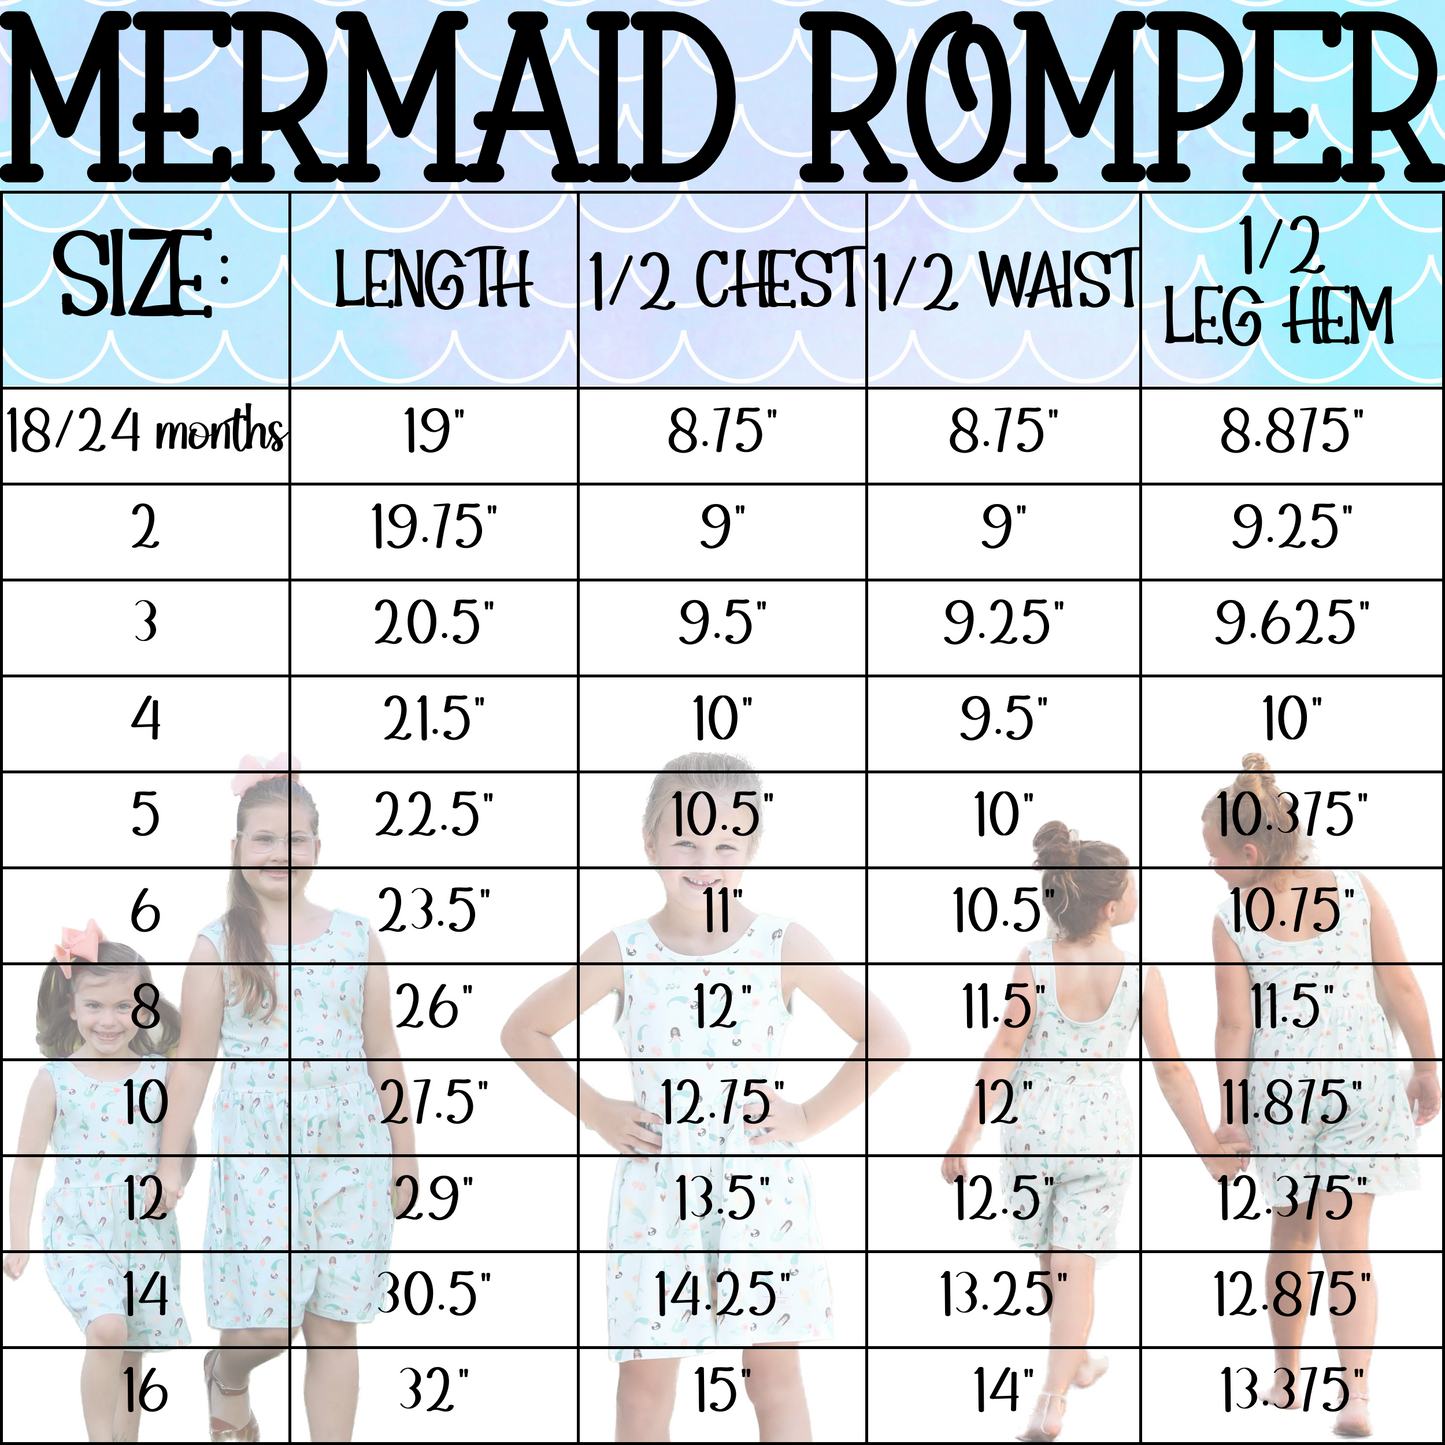 Mermaid Romper